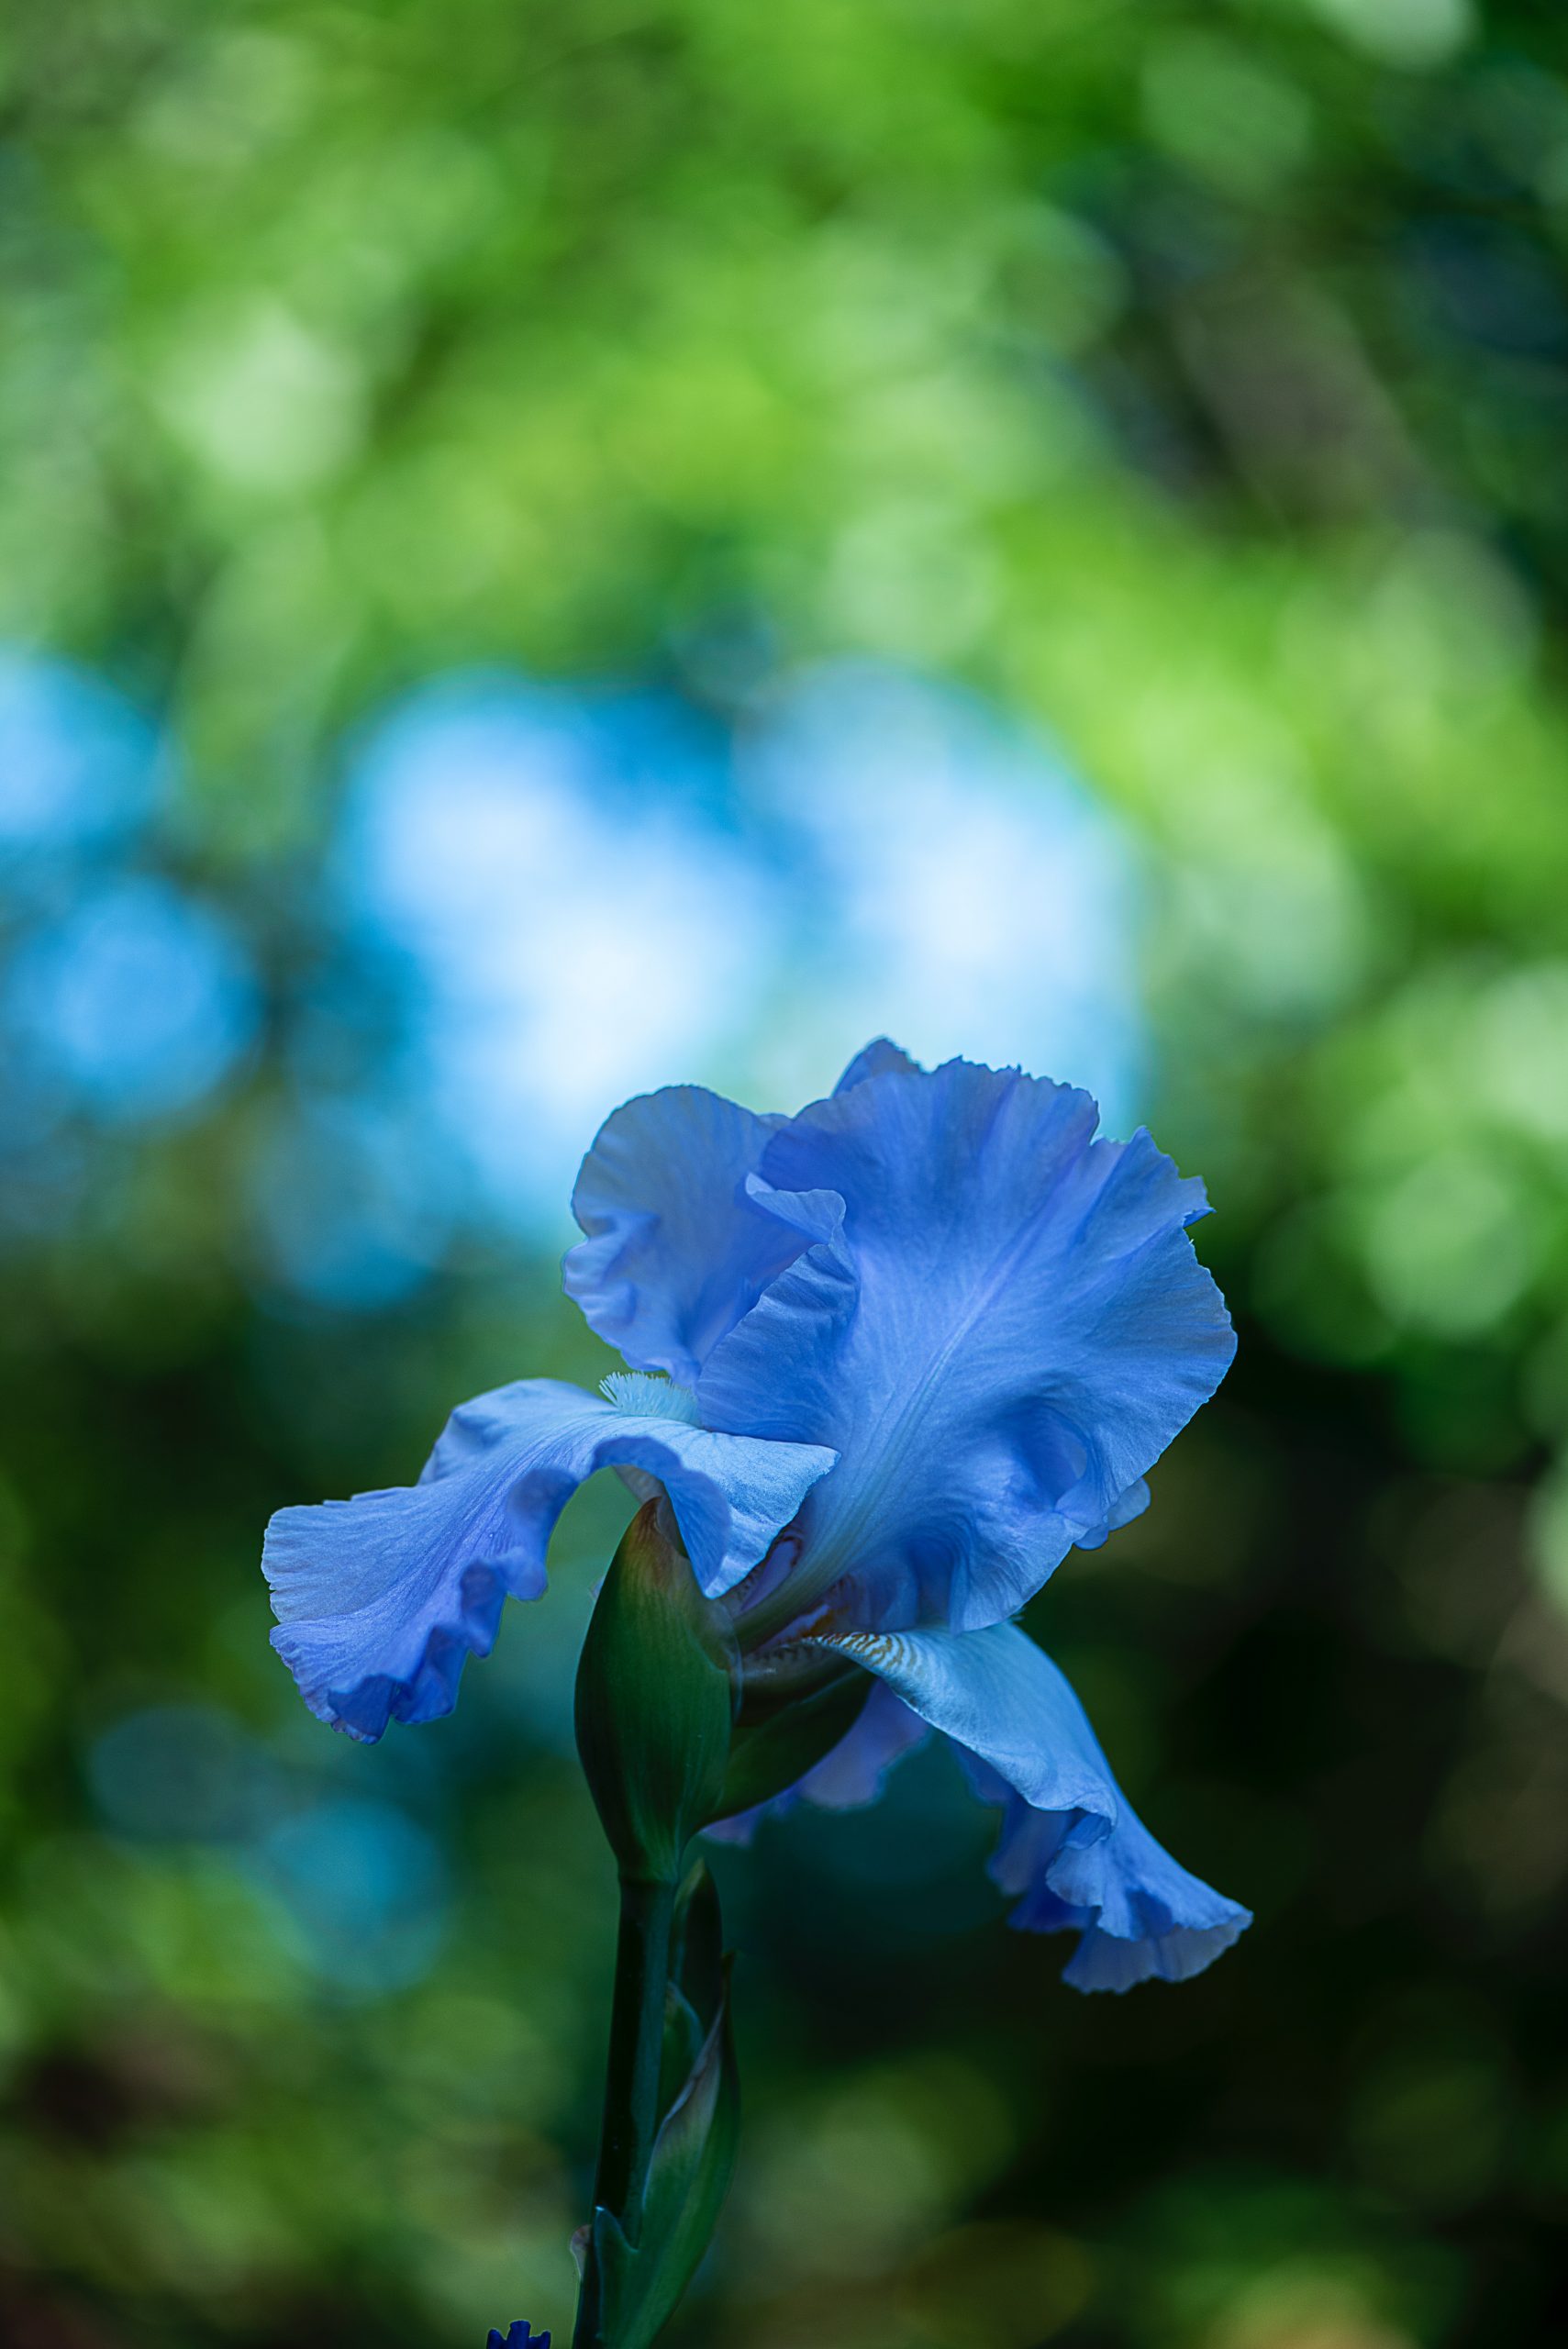 Iris, flor de febrero y figura mitológica